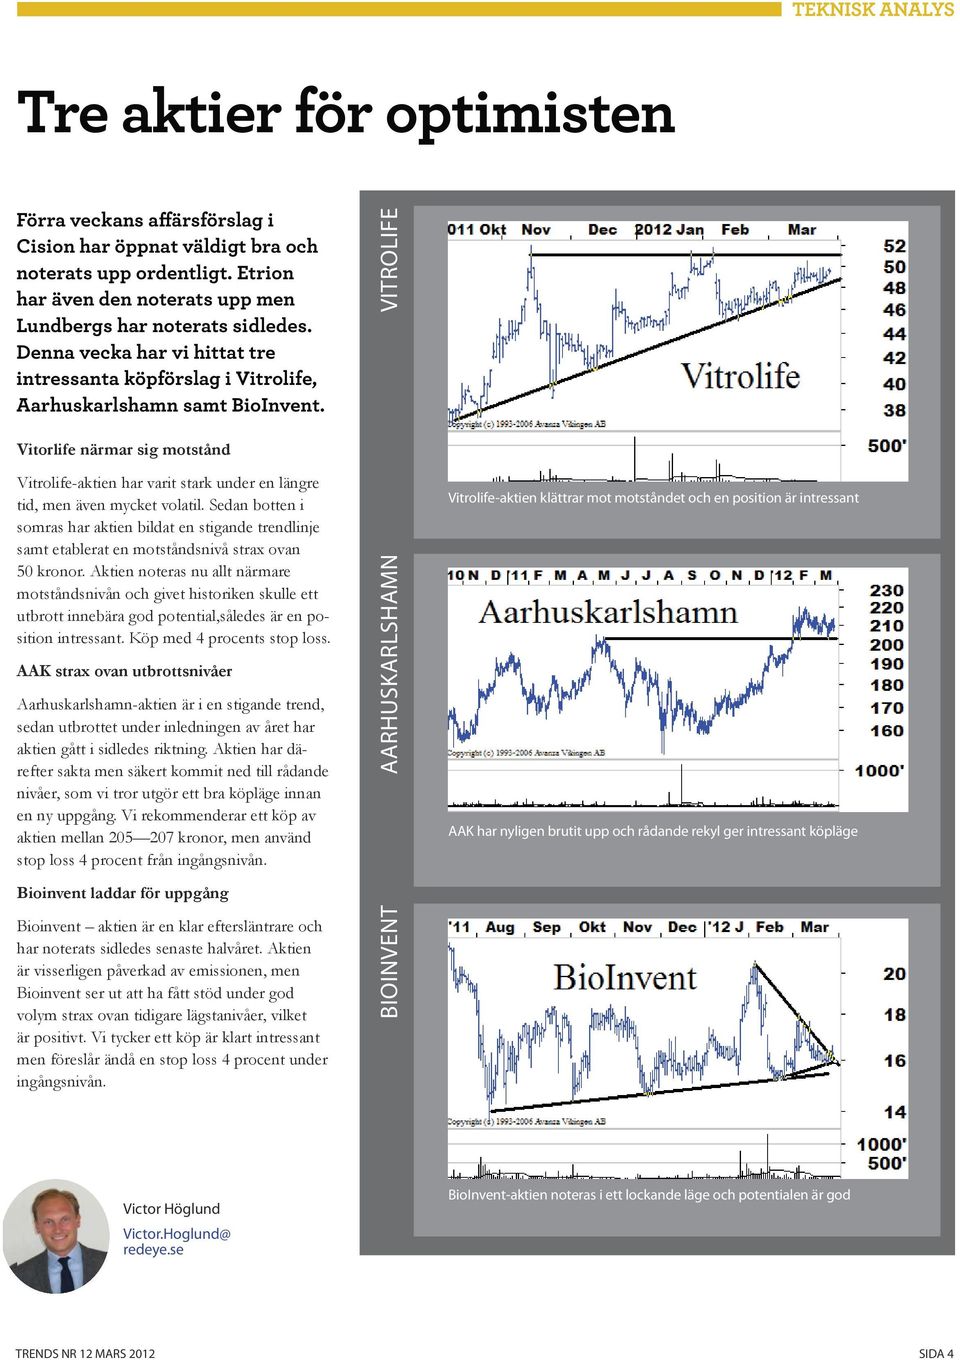 VITROLIFE Vitorlife närmar sig motstånd Vitrolife-aktien har varit stark under en längre tid, men även mycket volatil.